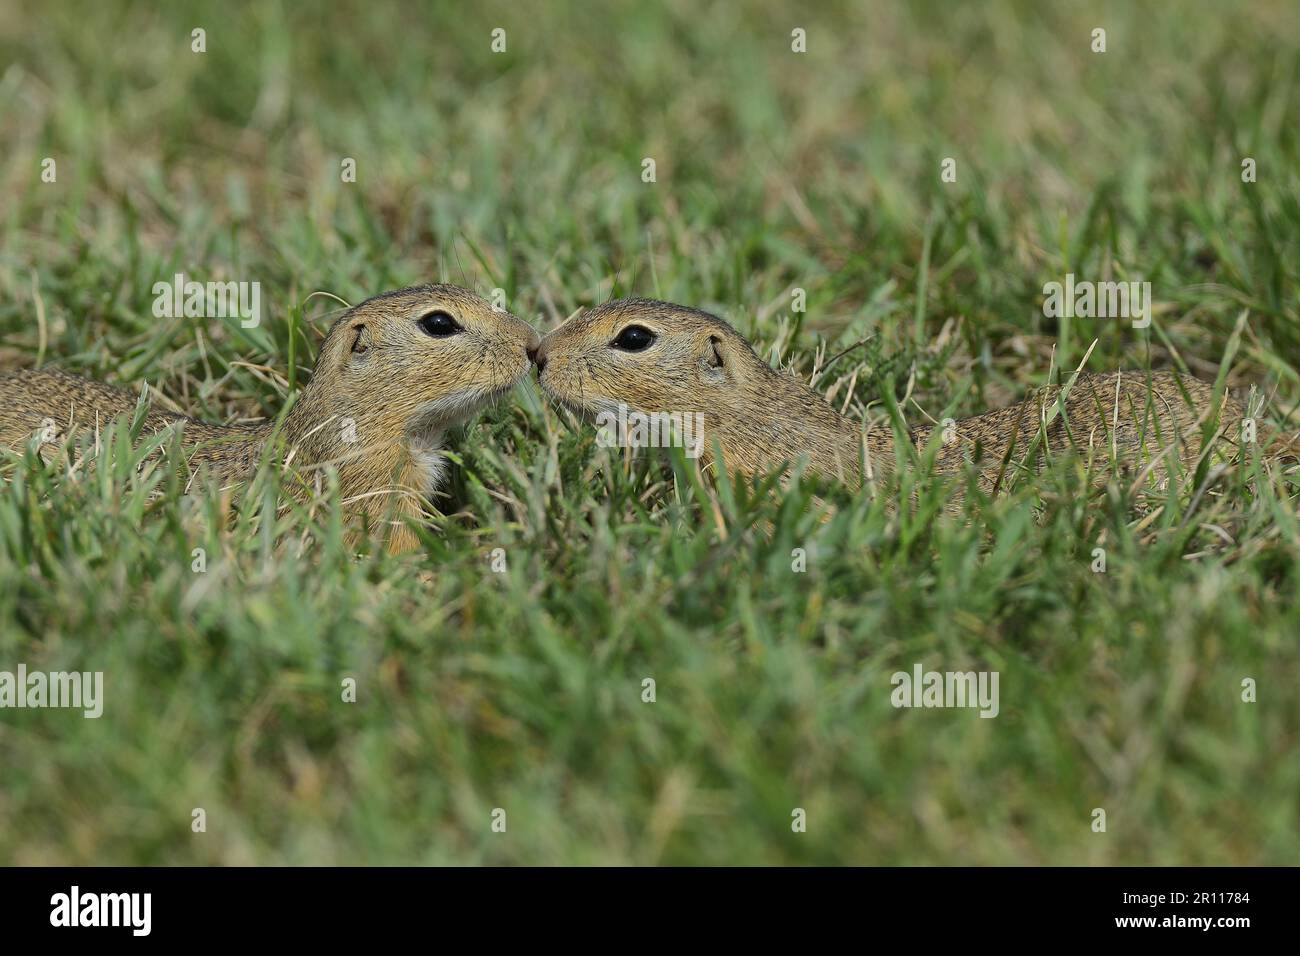 Scoiattolo di terra europeo (Spermophilus citellus) in un prato, due animali si incontrano e si annientano, Burgenland Austria Foto Stock